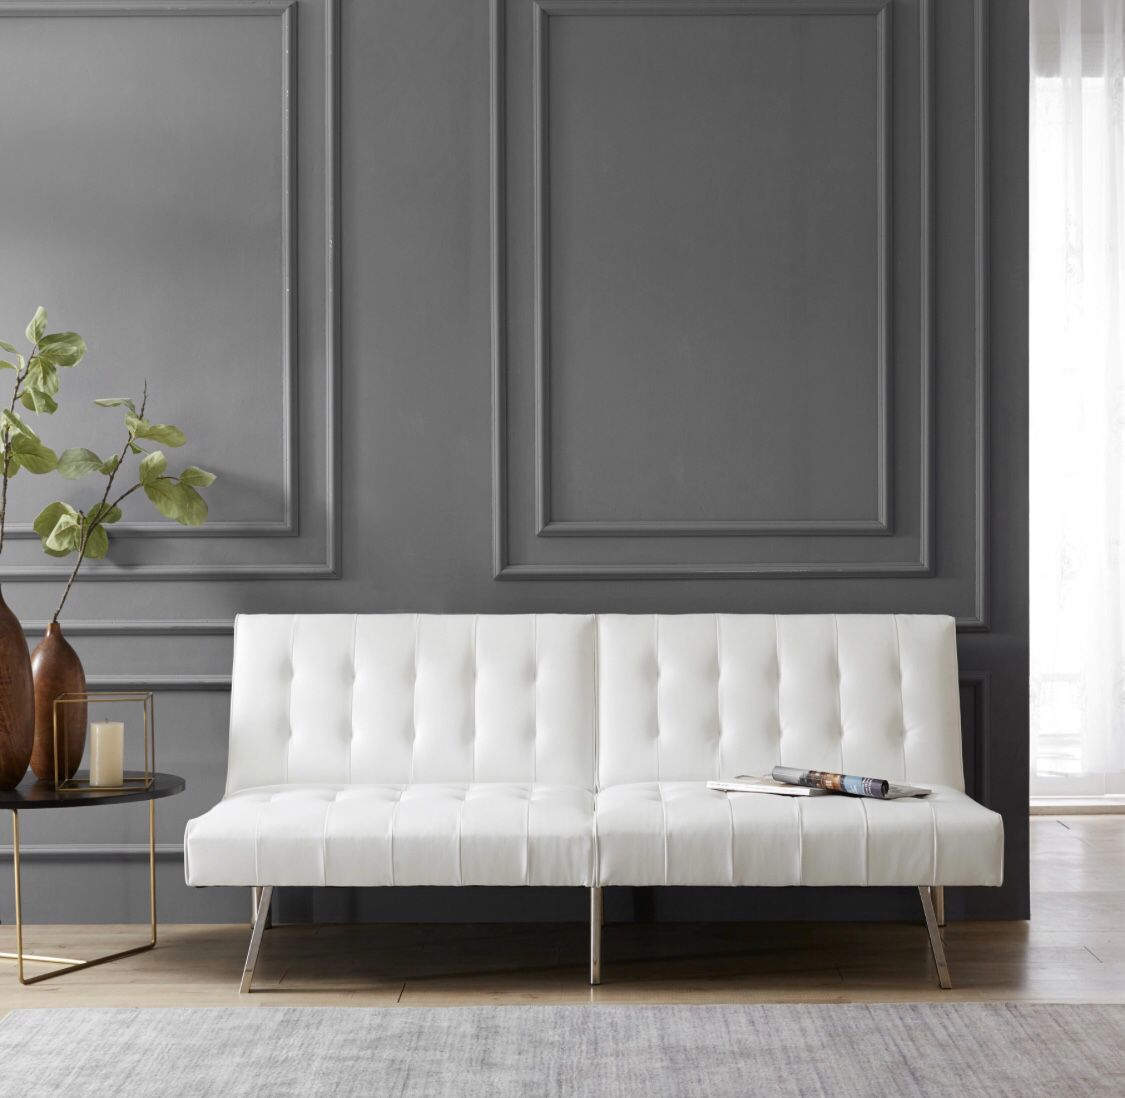 brand new white futon unopened